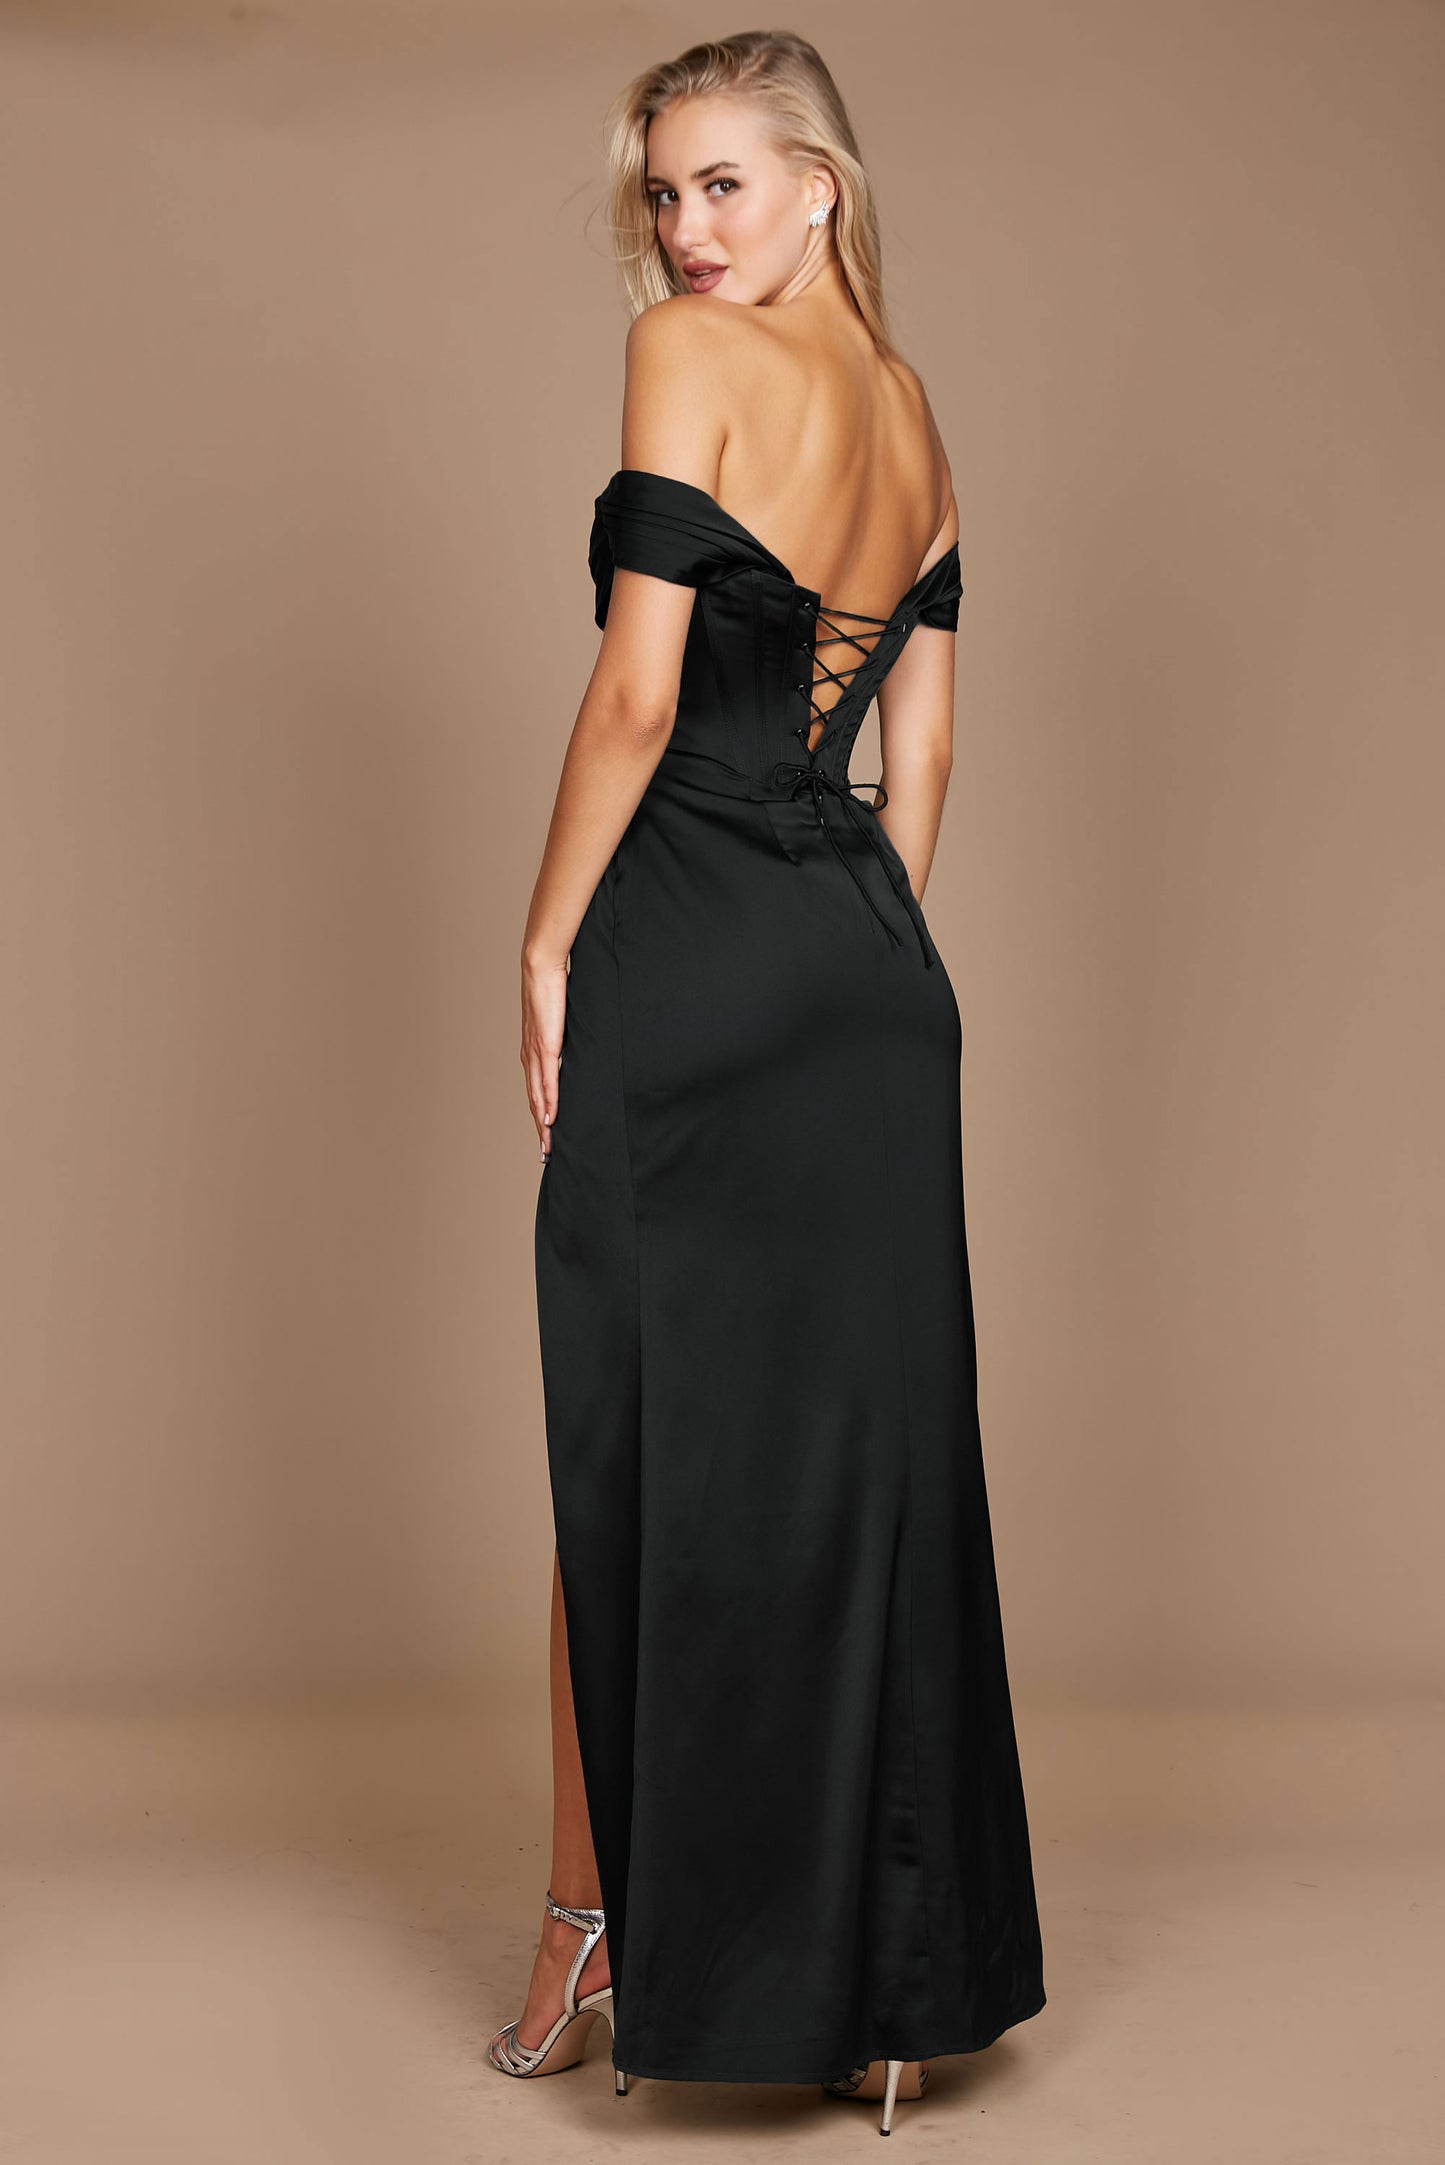 Formal Dresses Corset Satin Formal Evening Dress Black